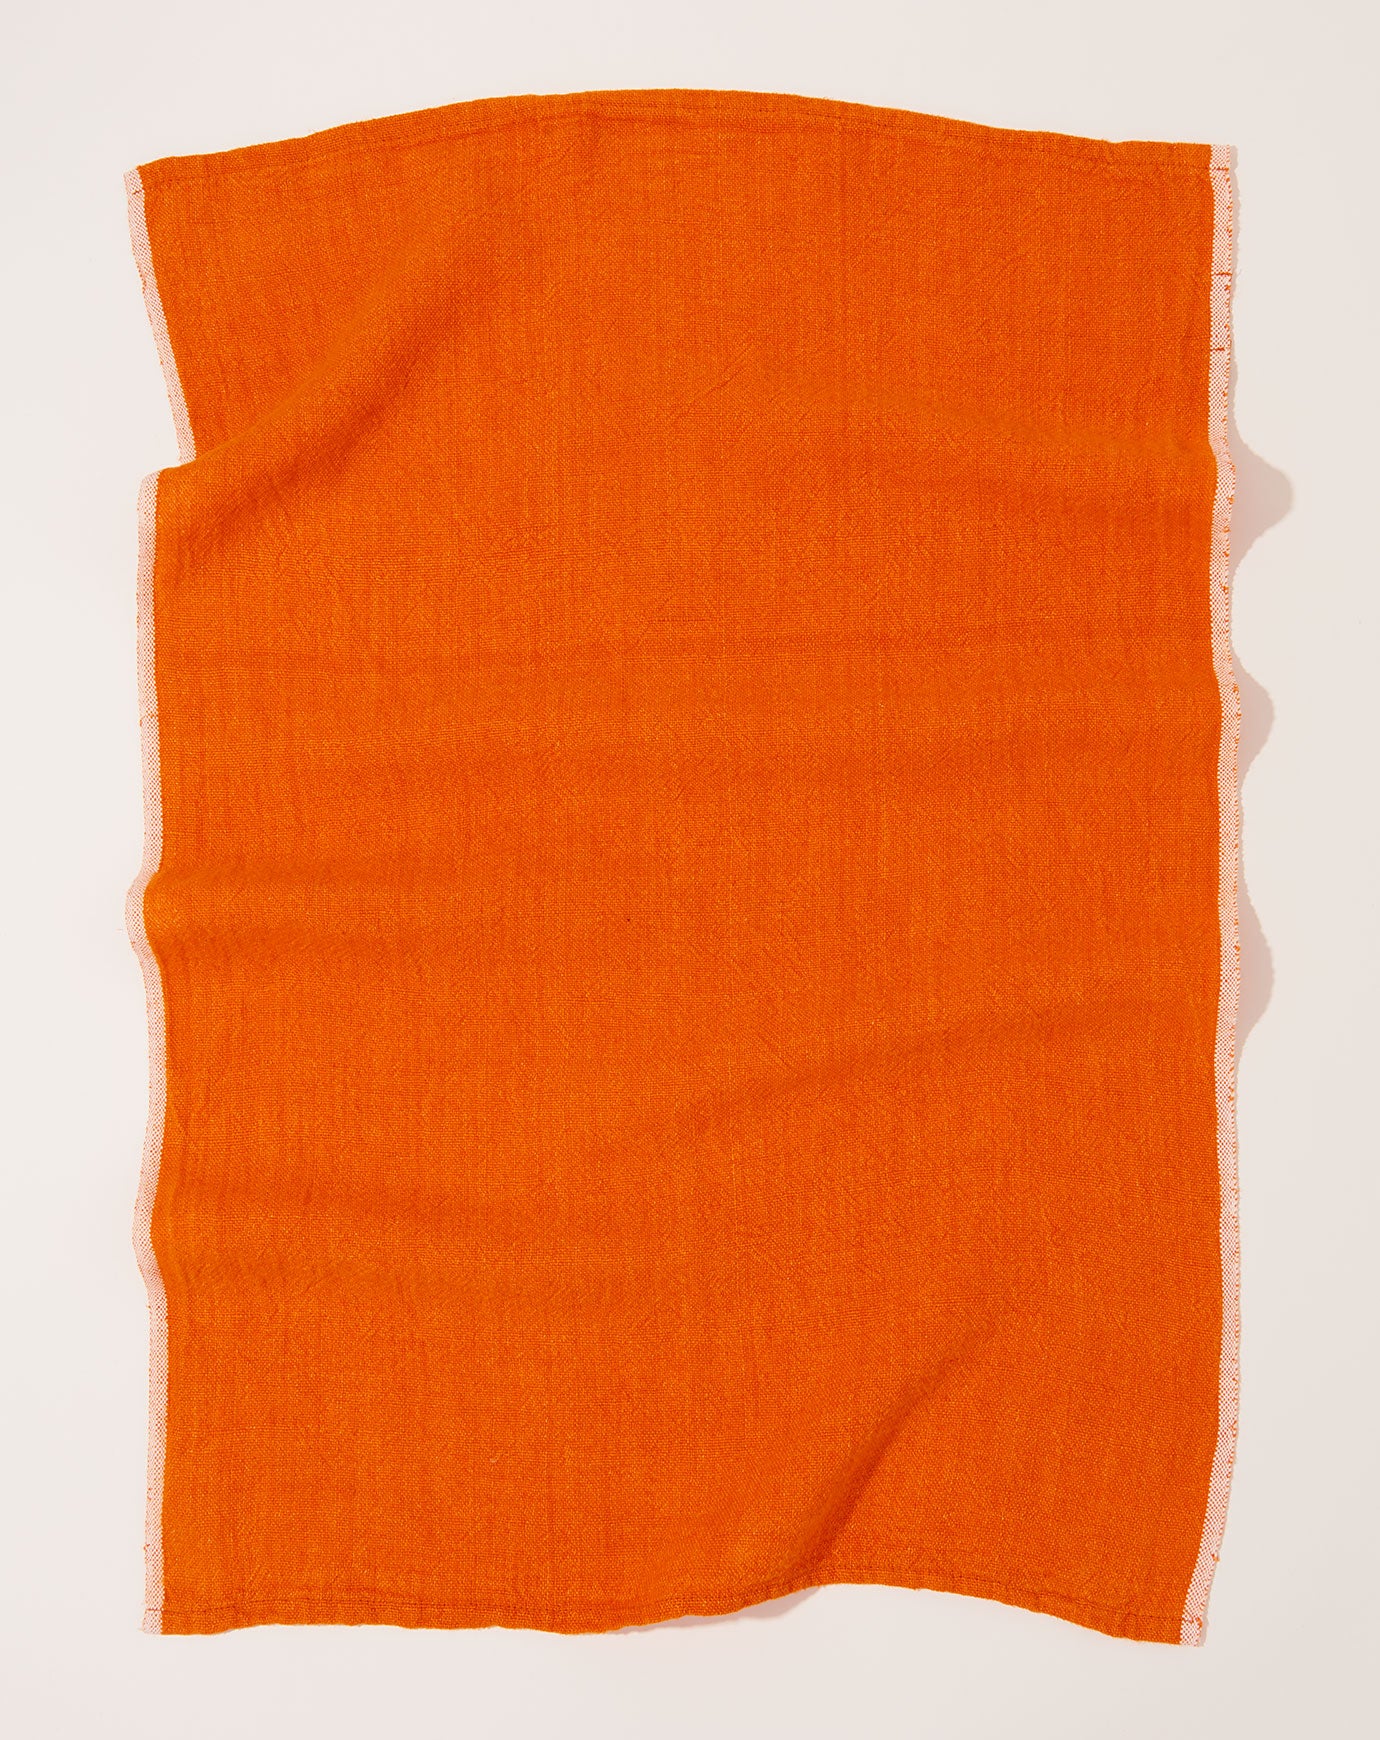 Caravan Chunky Linen Towels in Orange, Set of 2